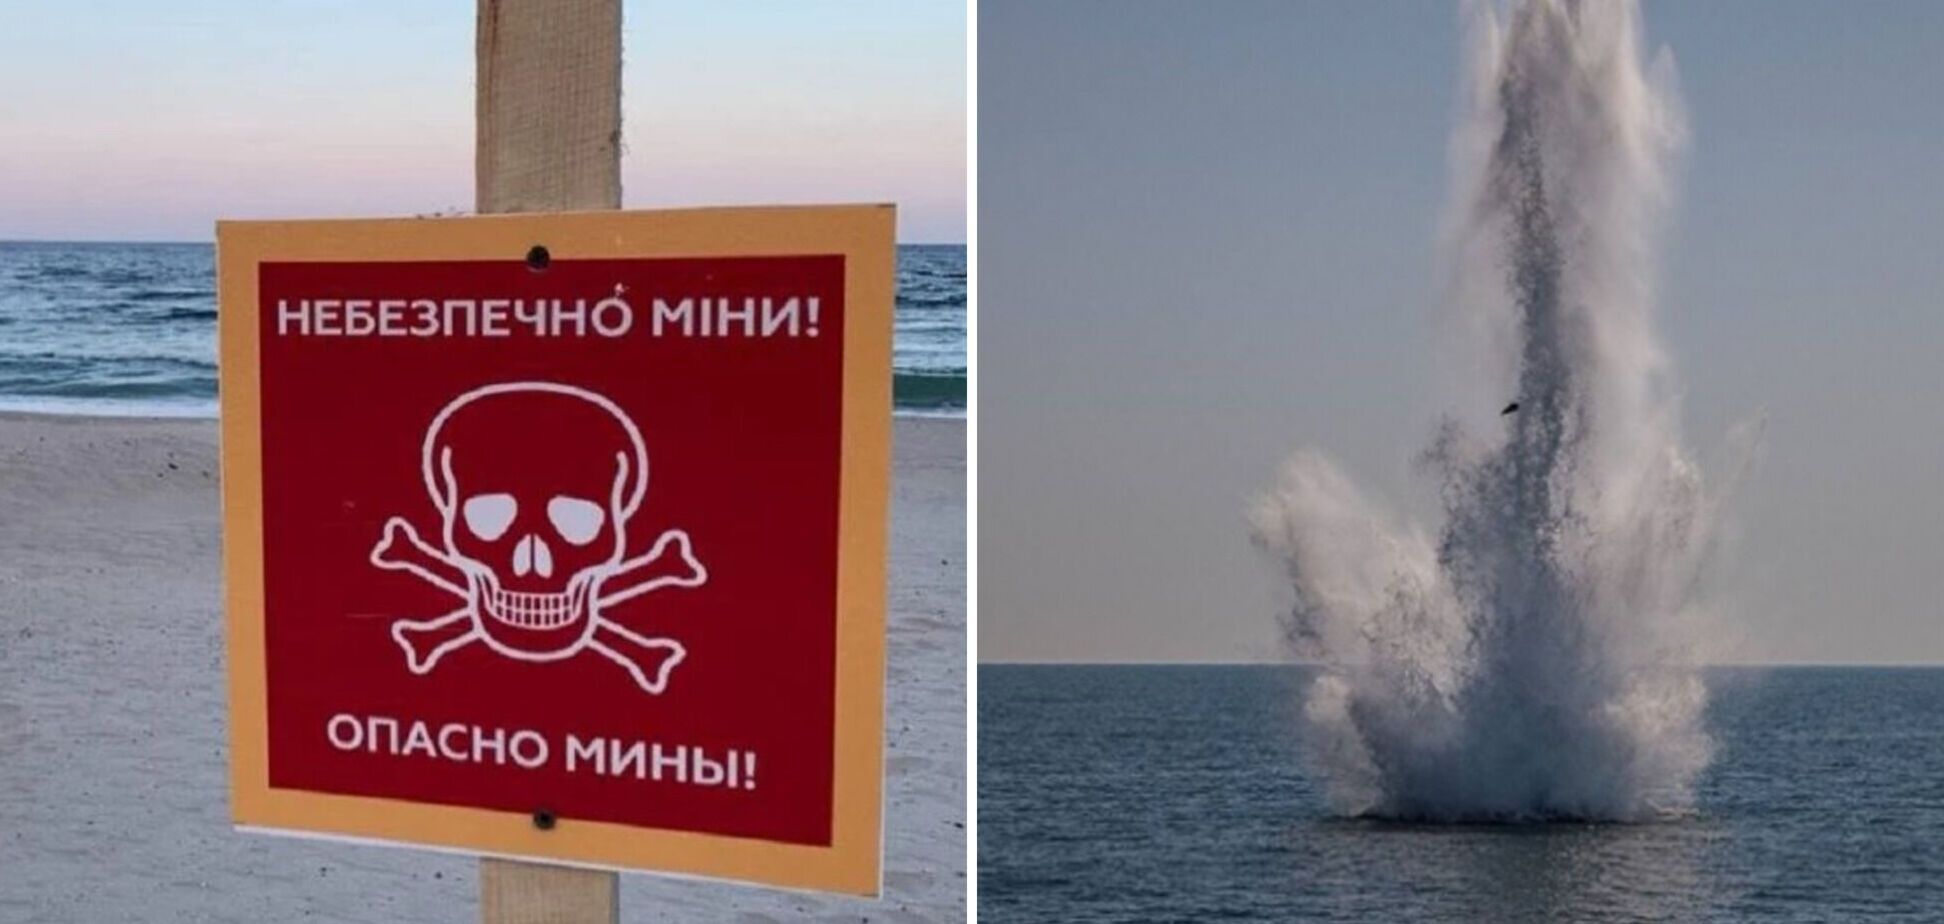 'В этом году ситуация лучше, чем в прошлом': россияне пока не могут минировать акваторию Черного моря, – Плетенчук